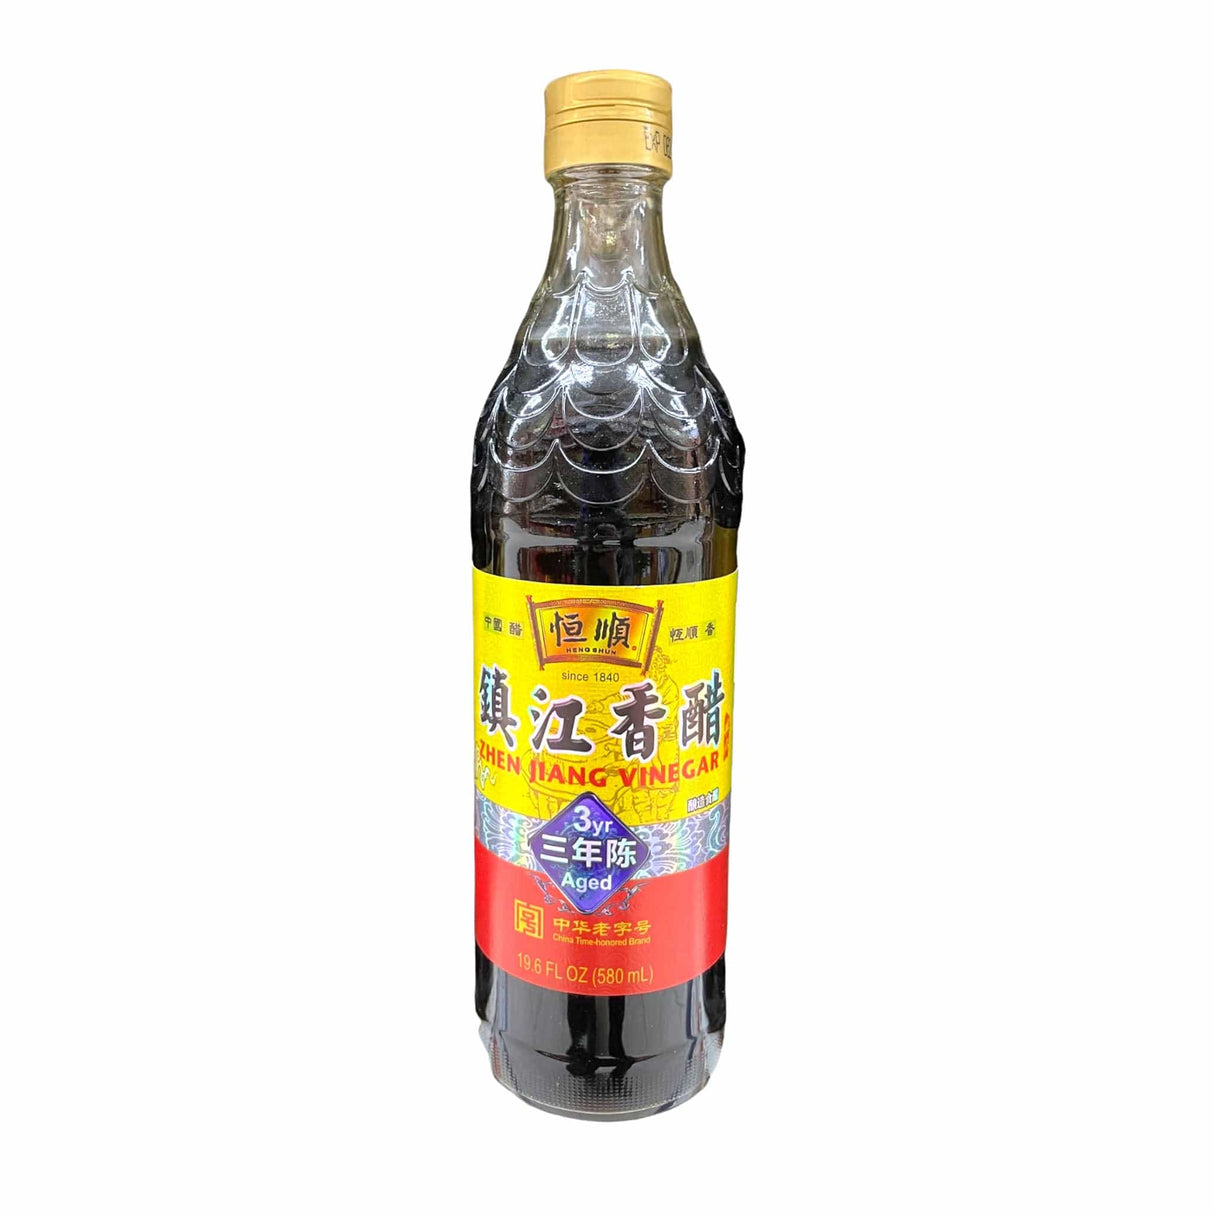 Hengshun Brand (Chinkiang) Zhenjiang Vinegar 3 Year Aged